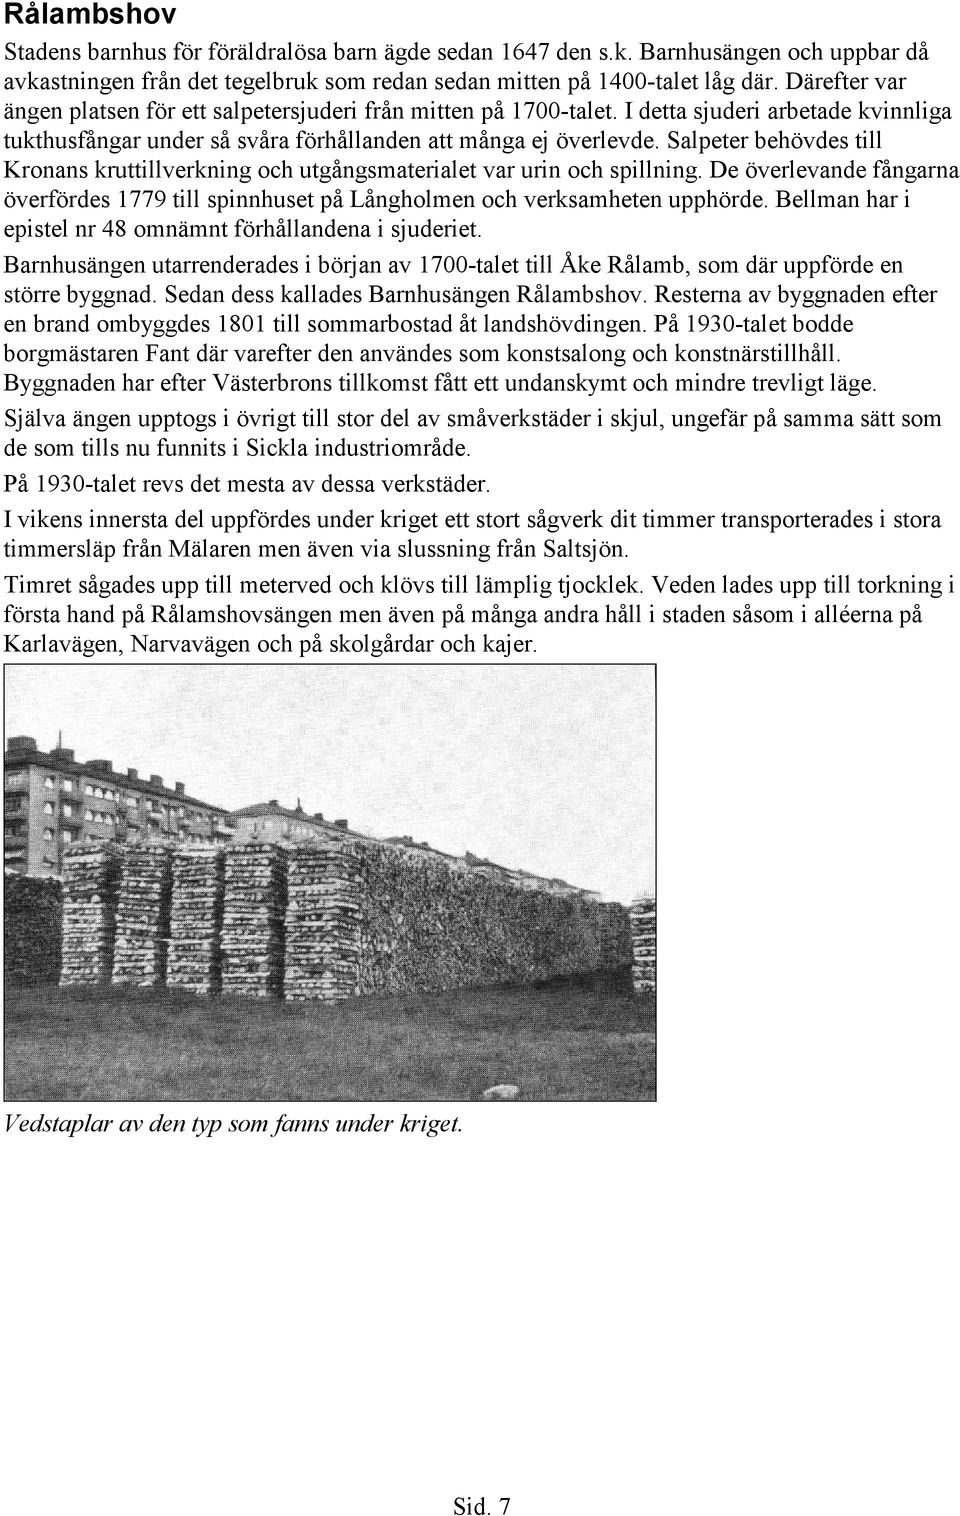 Salpeter behövdes till Kronans kruttillverkning och utgångsmaterialet var urin och spillning. De överlevande fångarna överfördes 1779 till spinnhuset på Långholmen och verksamheten upphörde.